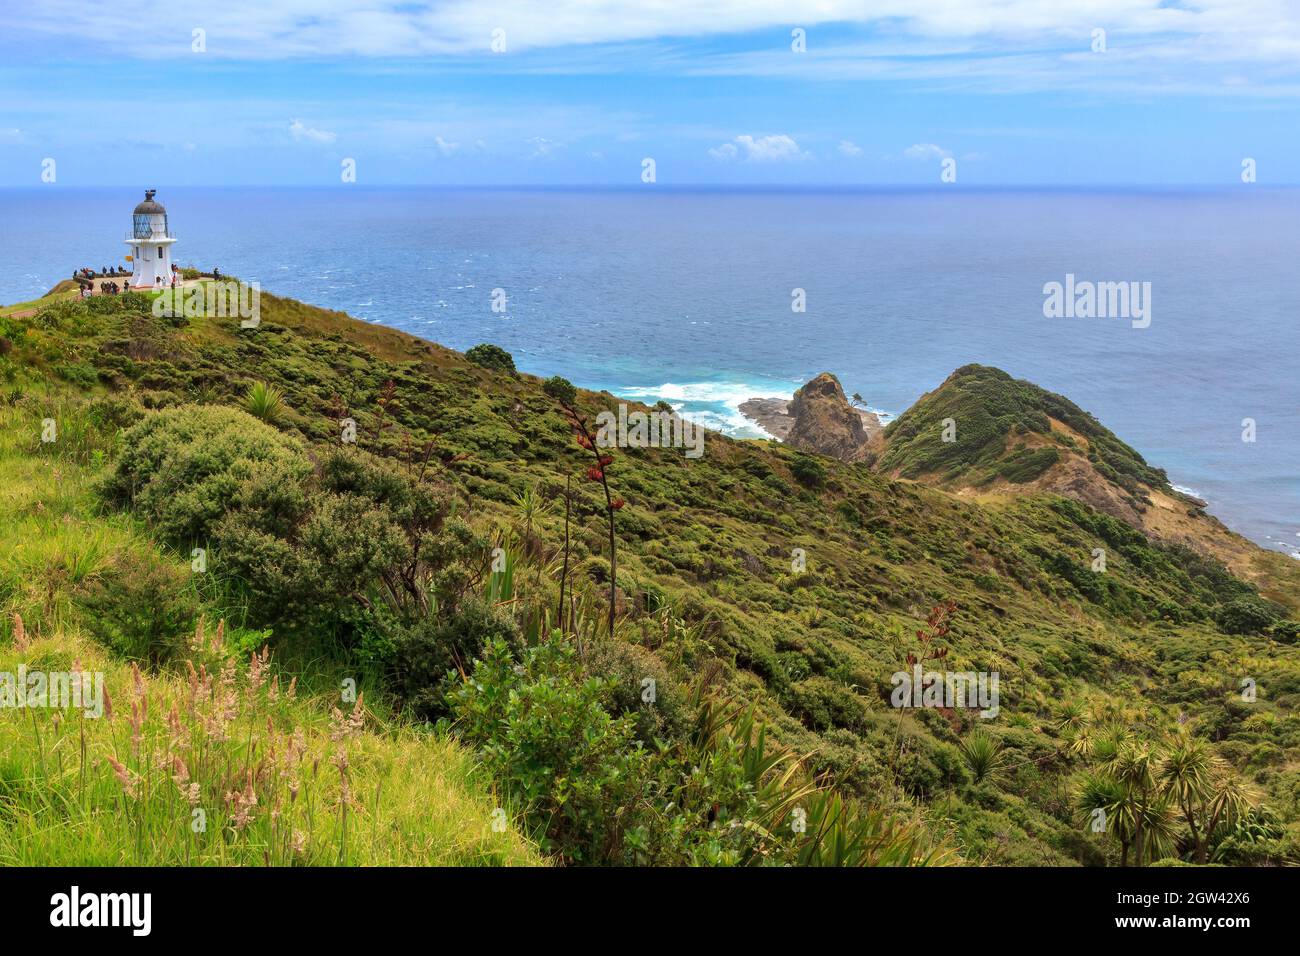 Kap Reinga im hohen Norden Neuseelands. Der ikonische Leuchtturm und das Kap selbst, das in den Ozean ragt Stockfoto